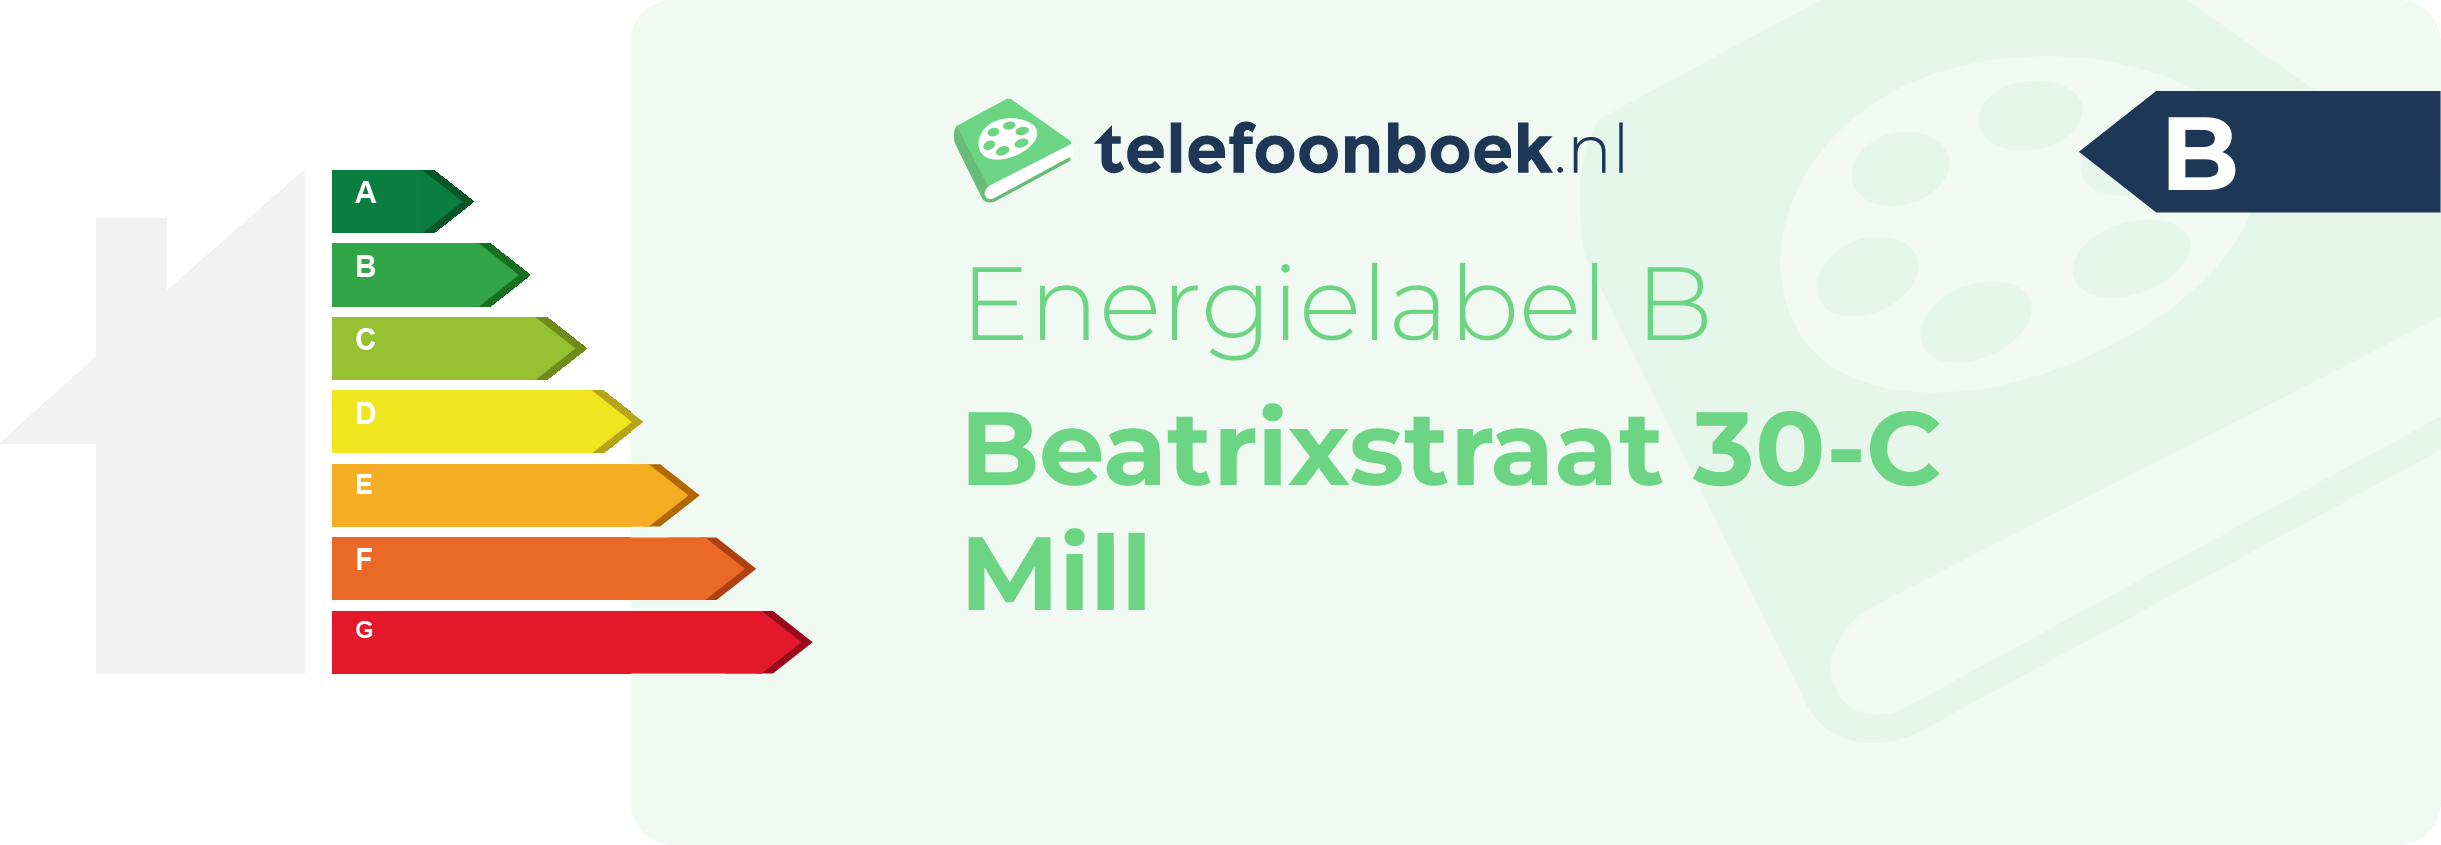 Energielabel Beatrixstraat 30-C Mill